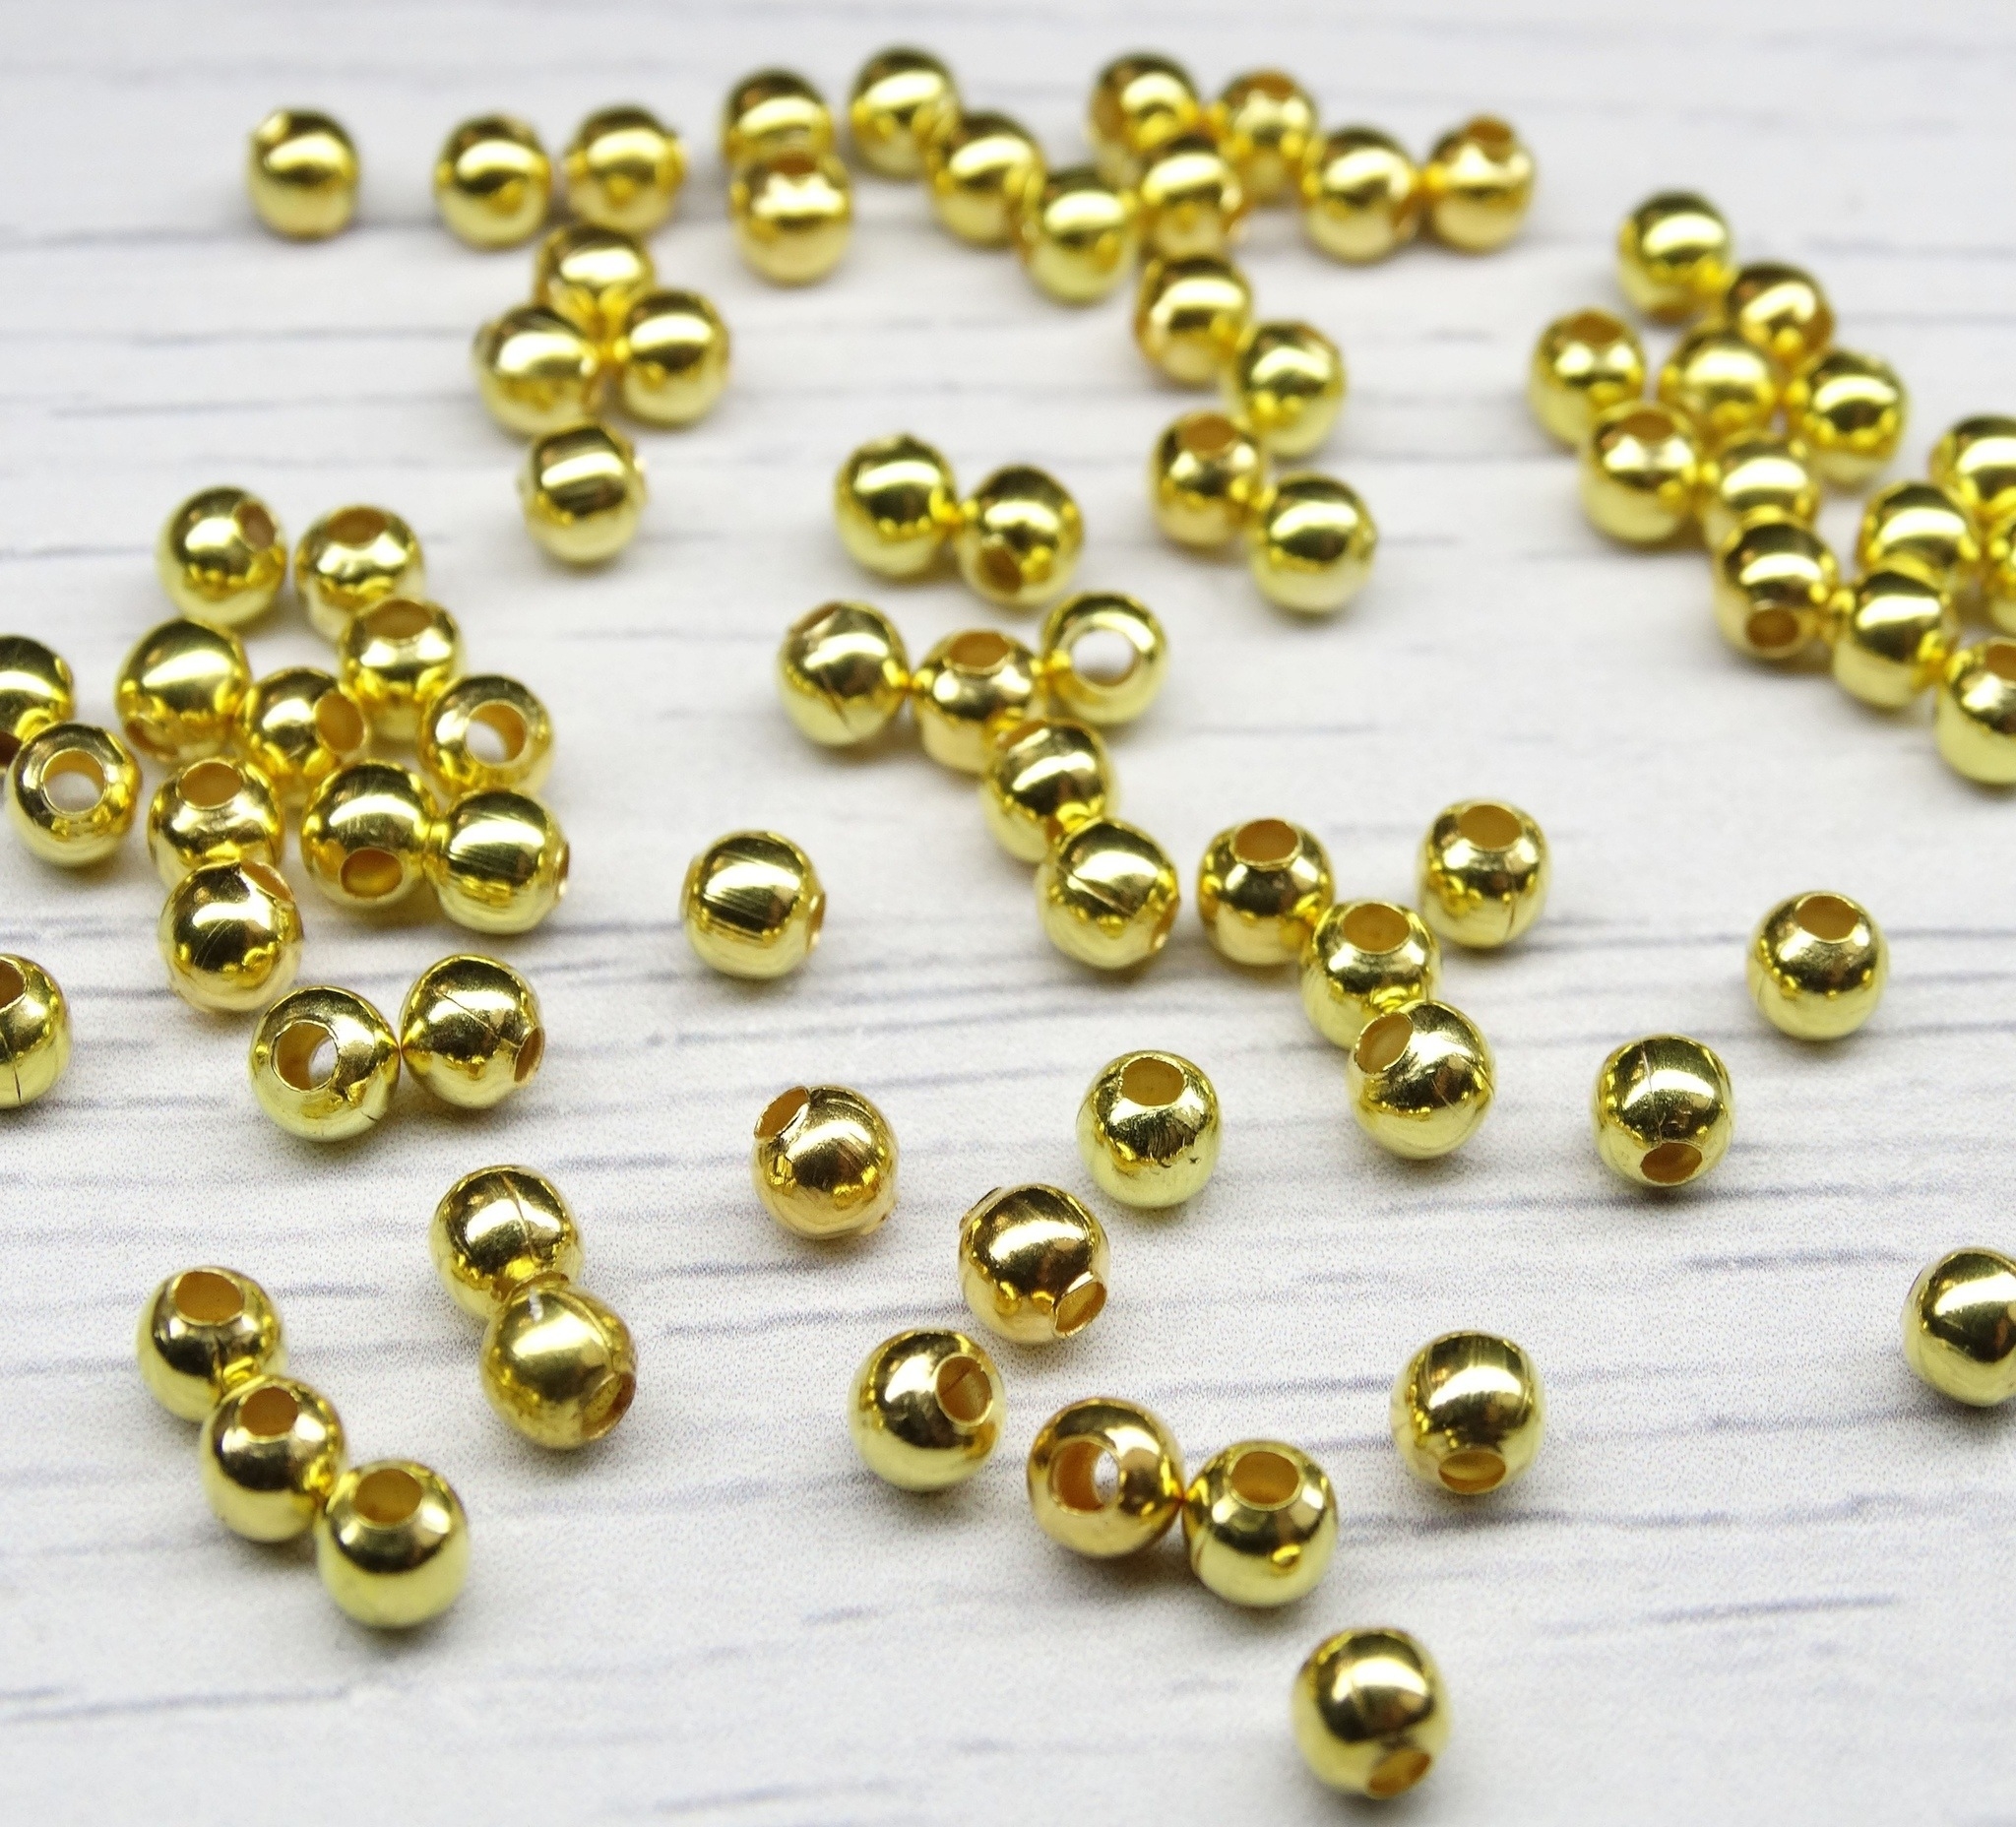 БЗ001НН4 Металлические бусины круглые, цвет: золото (позолота), размер: 4 мм, 5 гр.